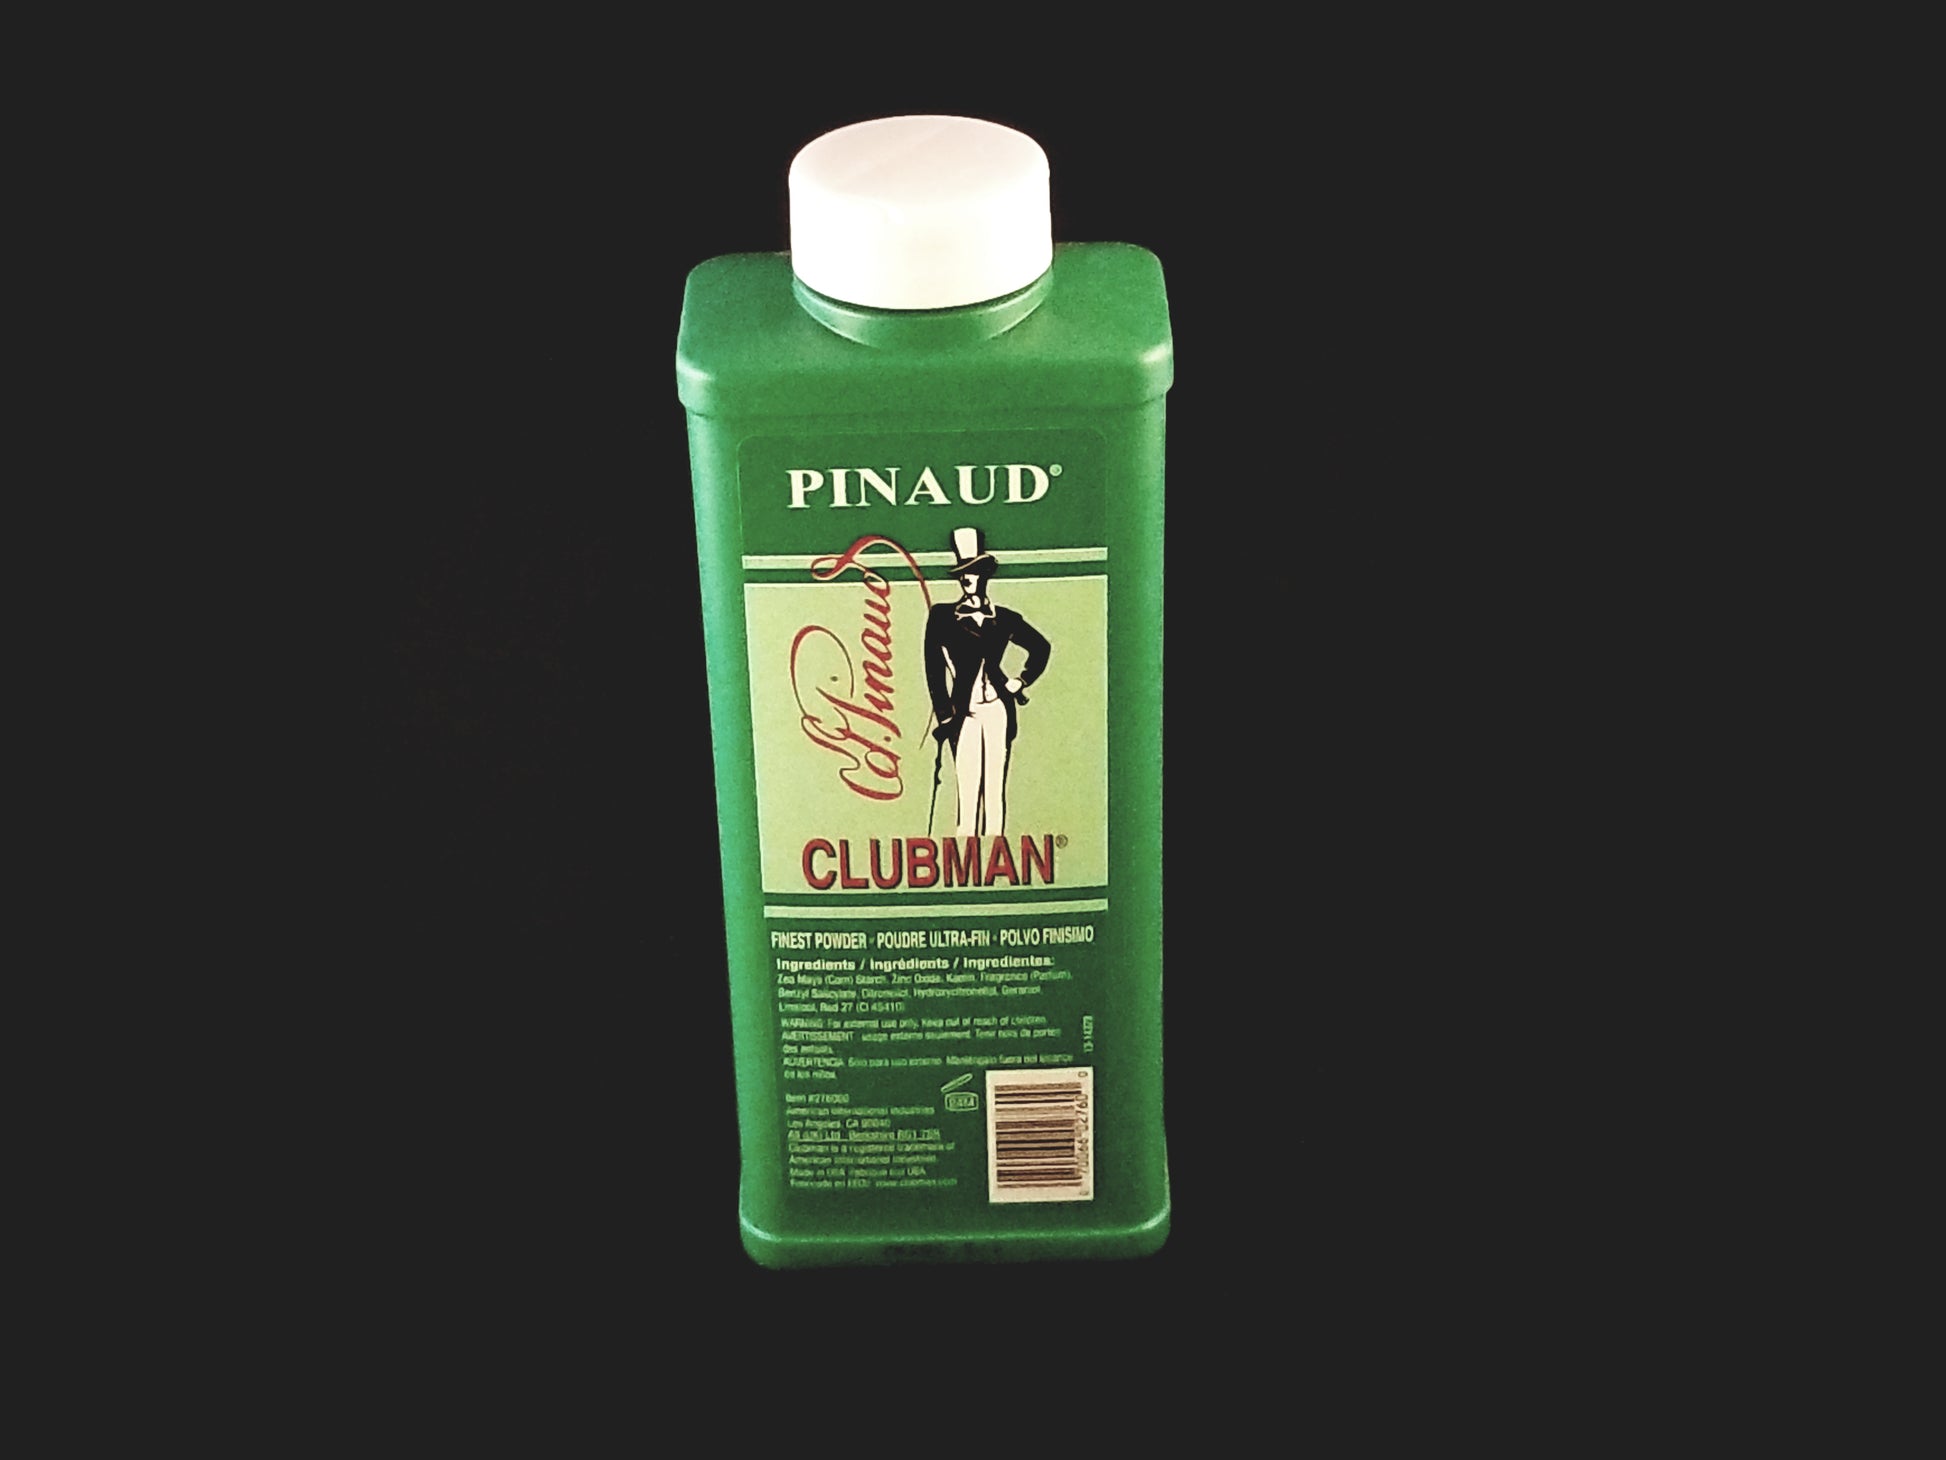 Pinaud Clubman Powder 9 oz - HAB 